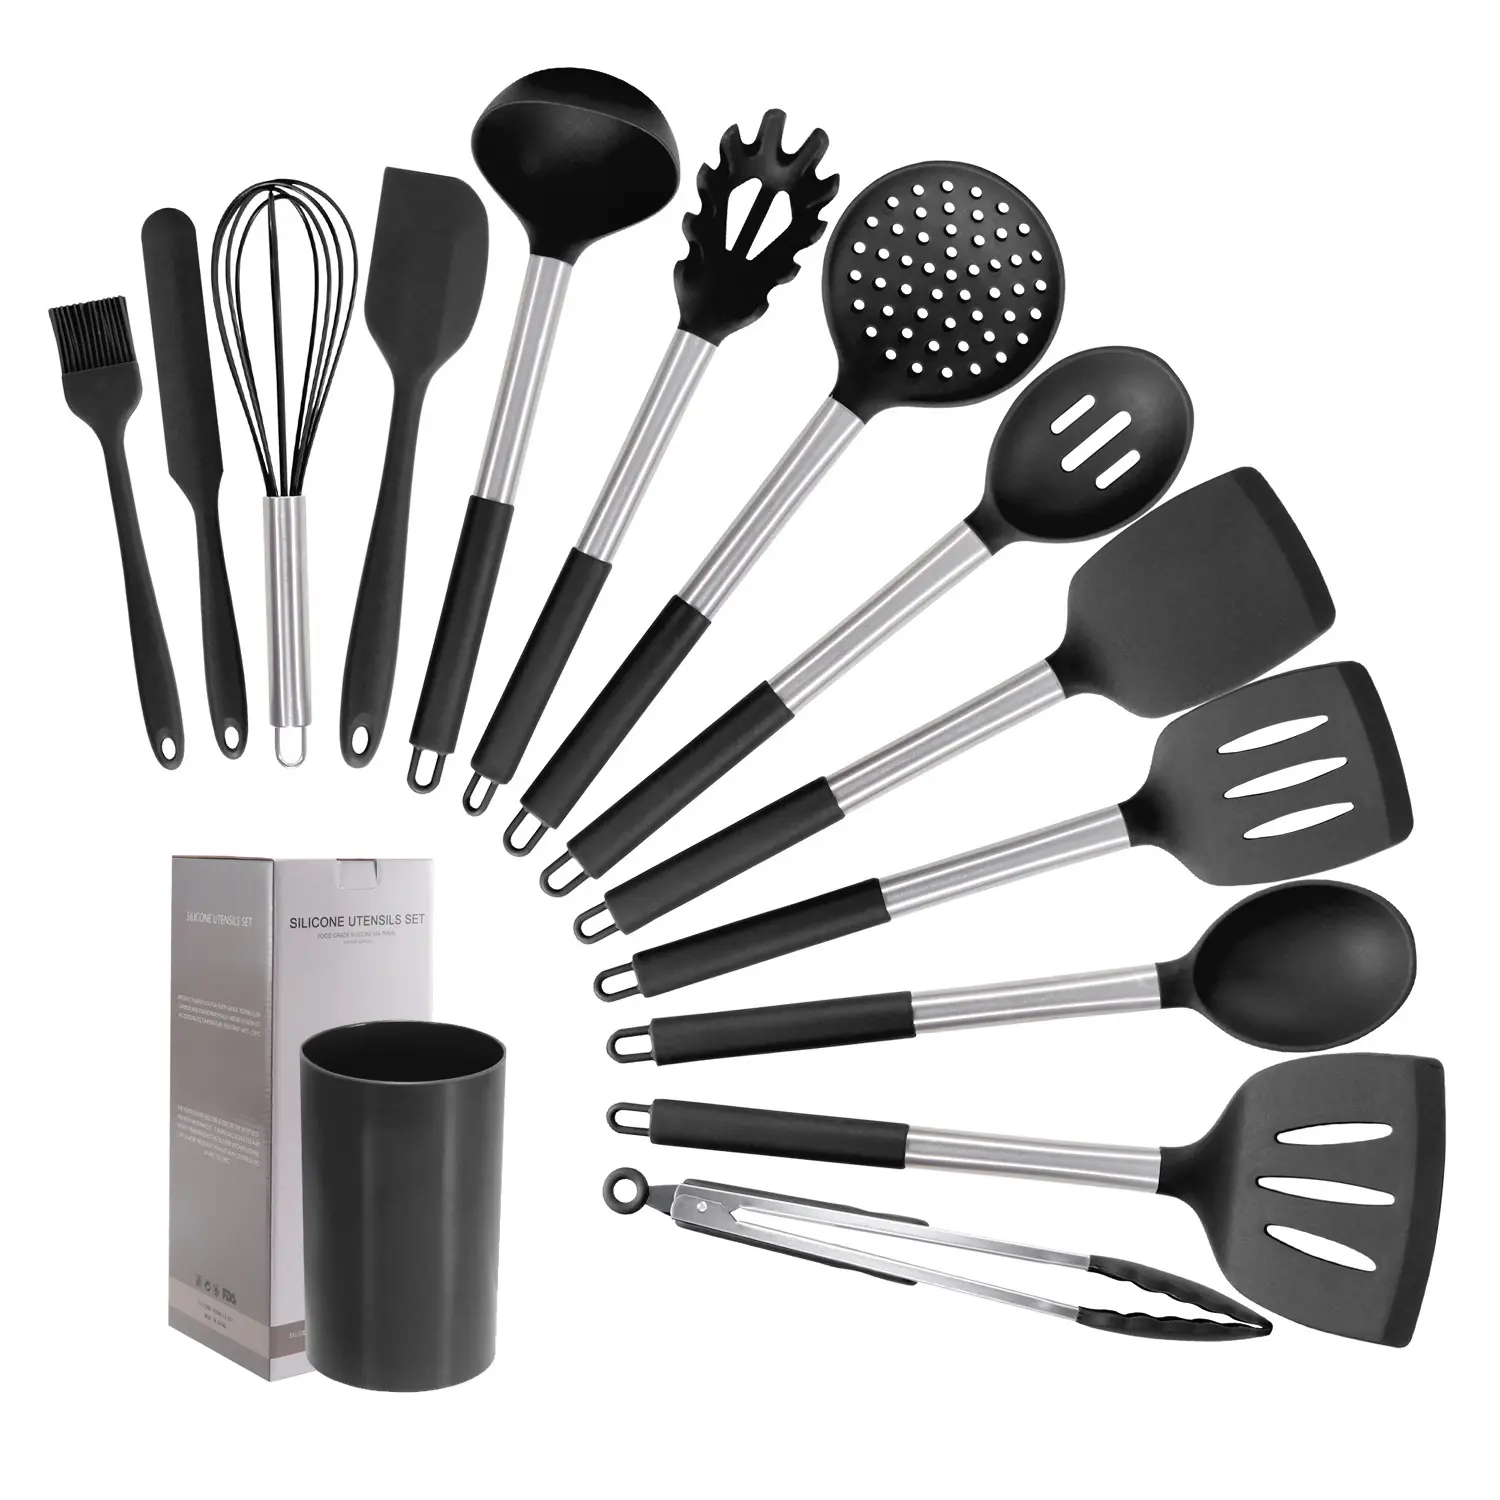 Küchen utensilien Set Werkzeuge Nicht 14 Stück Silikon Kochute nsilien Set Turner Zange Spatel Löffel Mit Edelstahl Griff